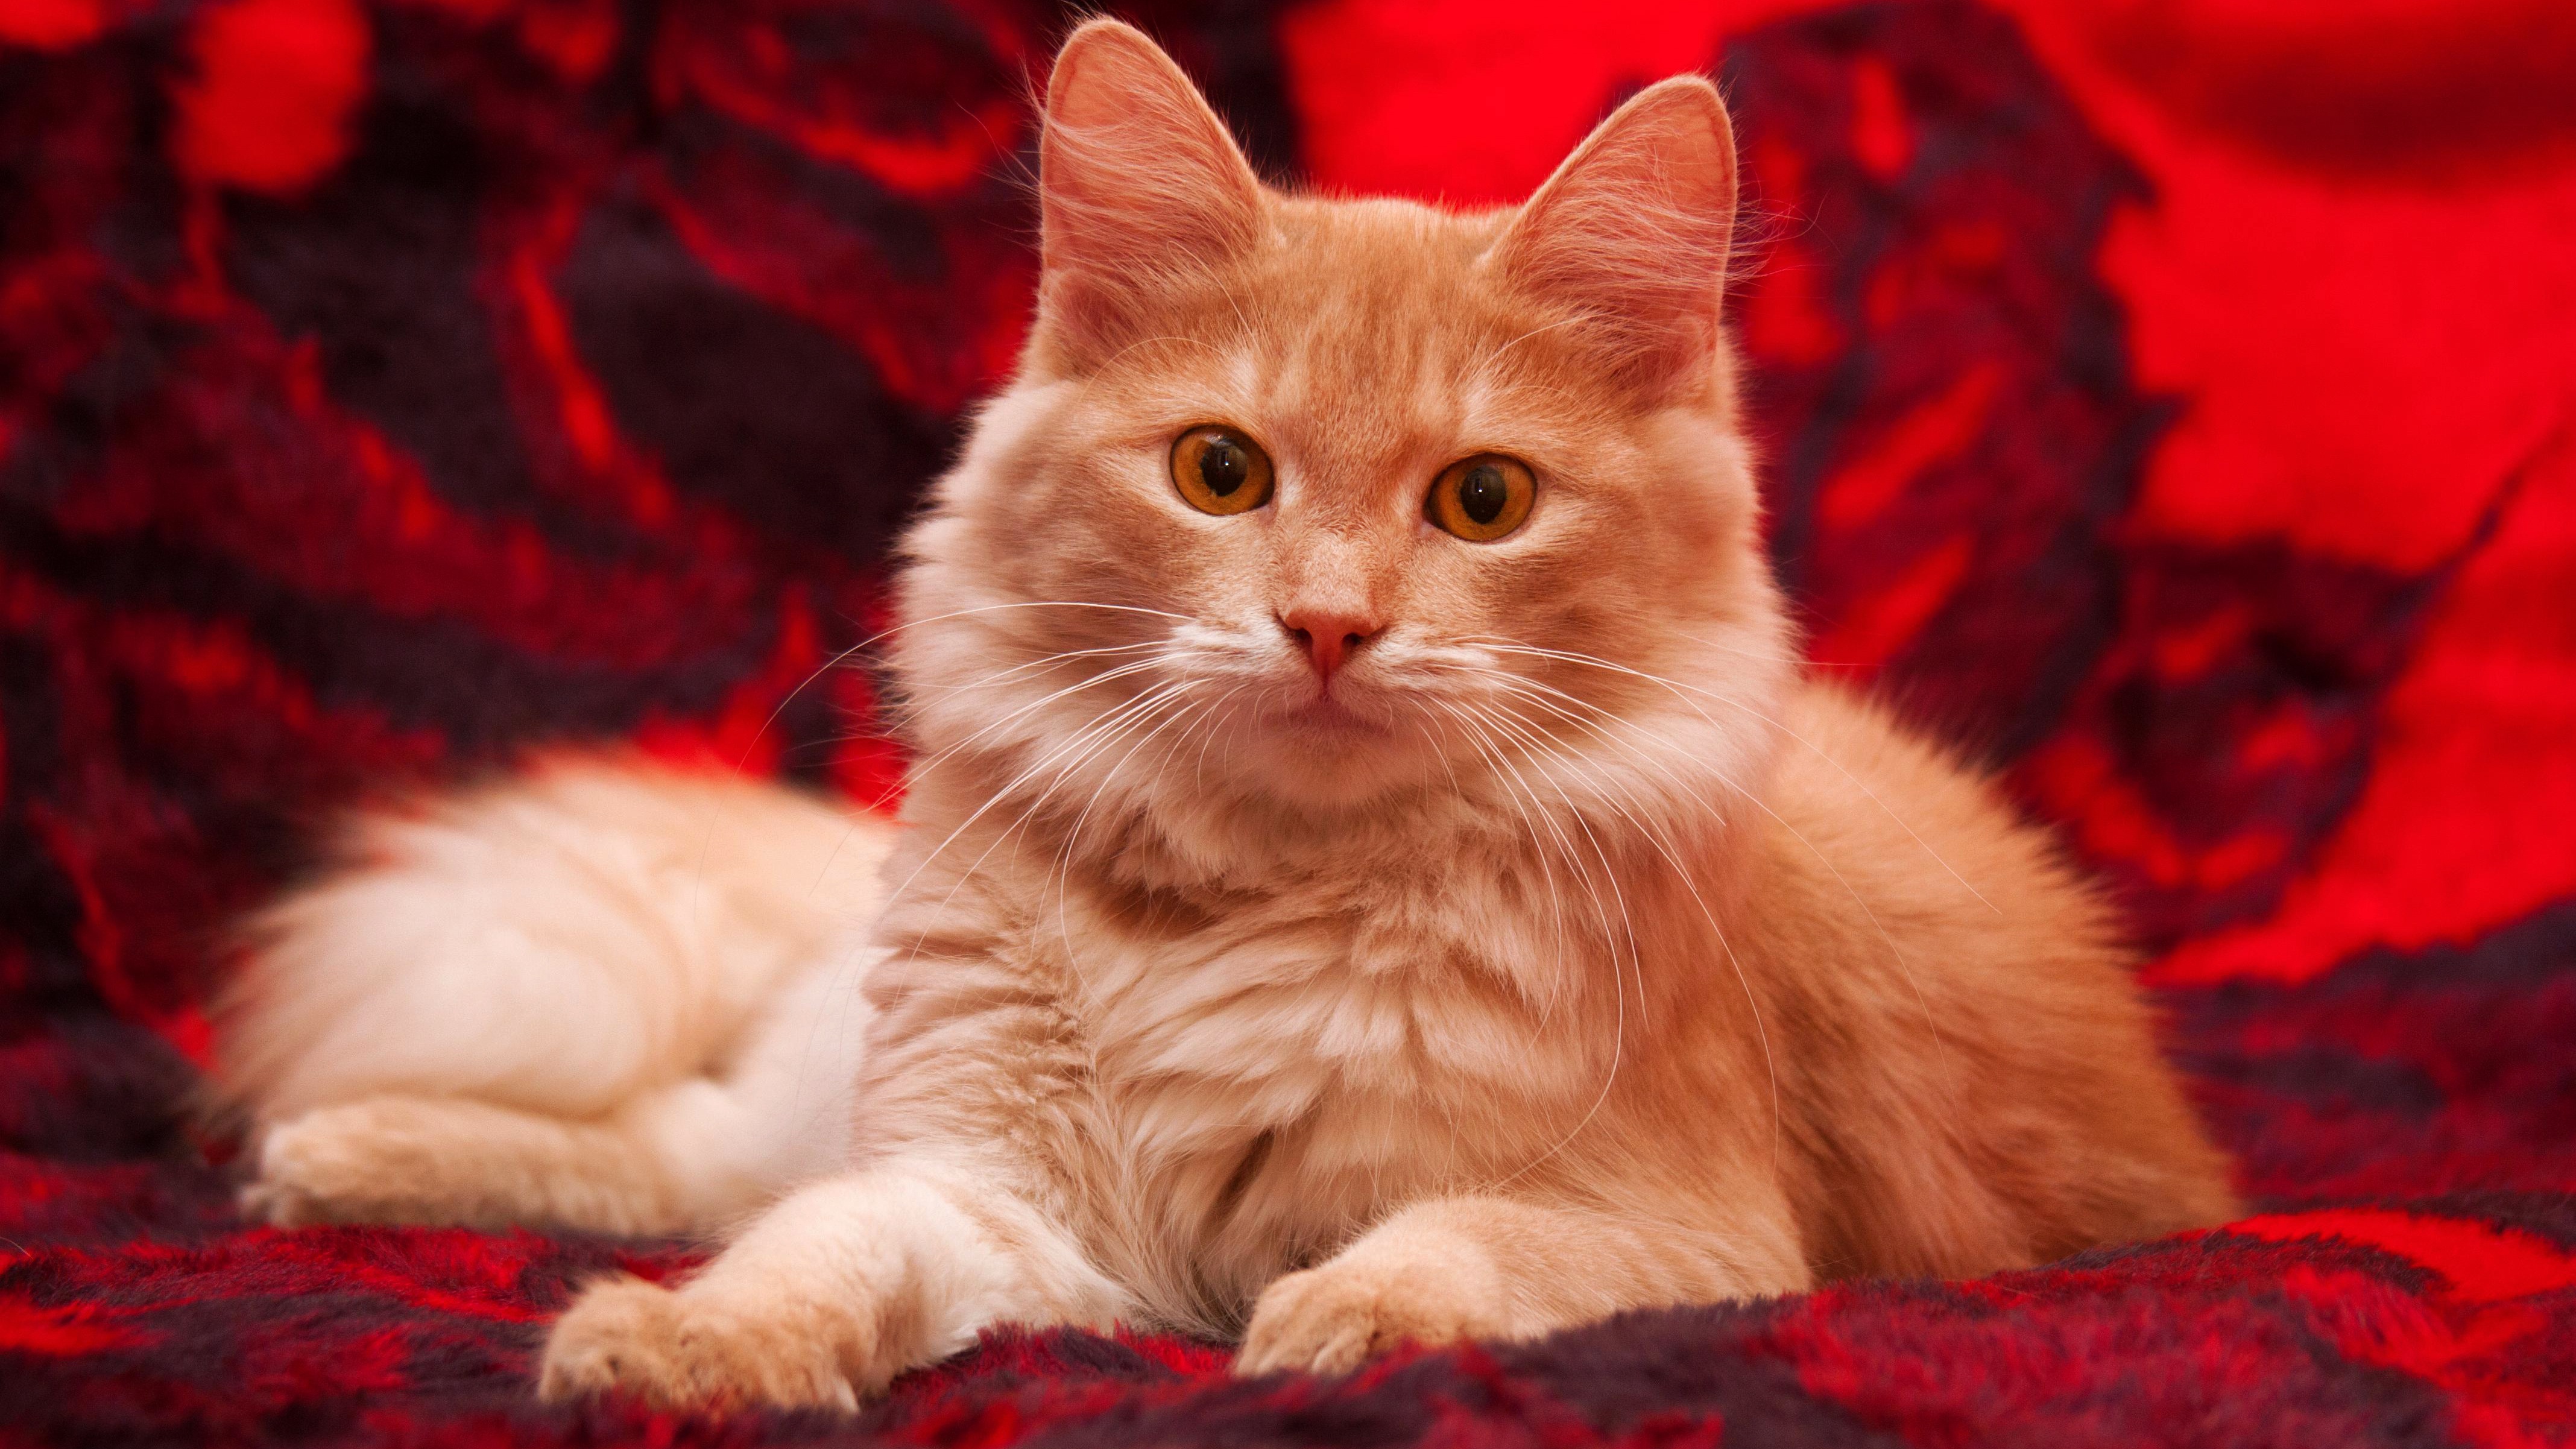 Red cat папа. Сибирская кошка палевая. Мейн кун рыжий. Сибирский Мейн кун. Сибирская кошка красная.